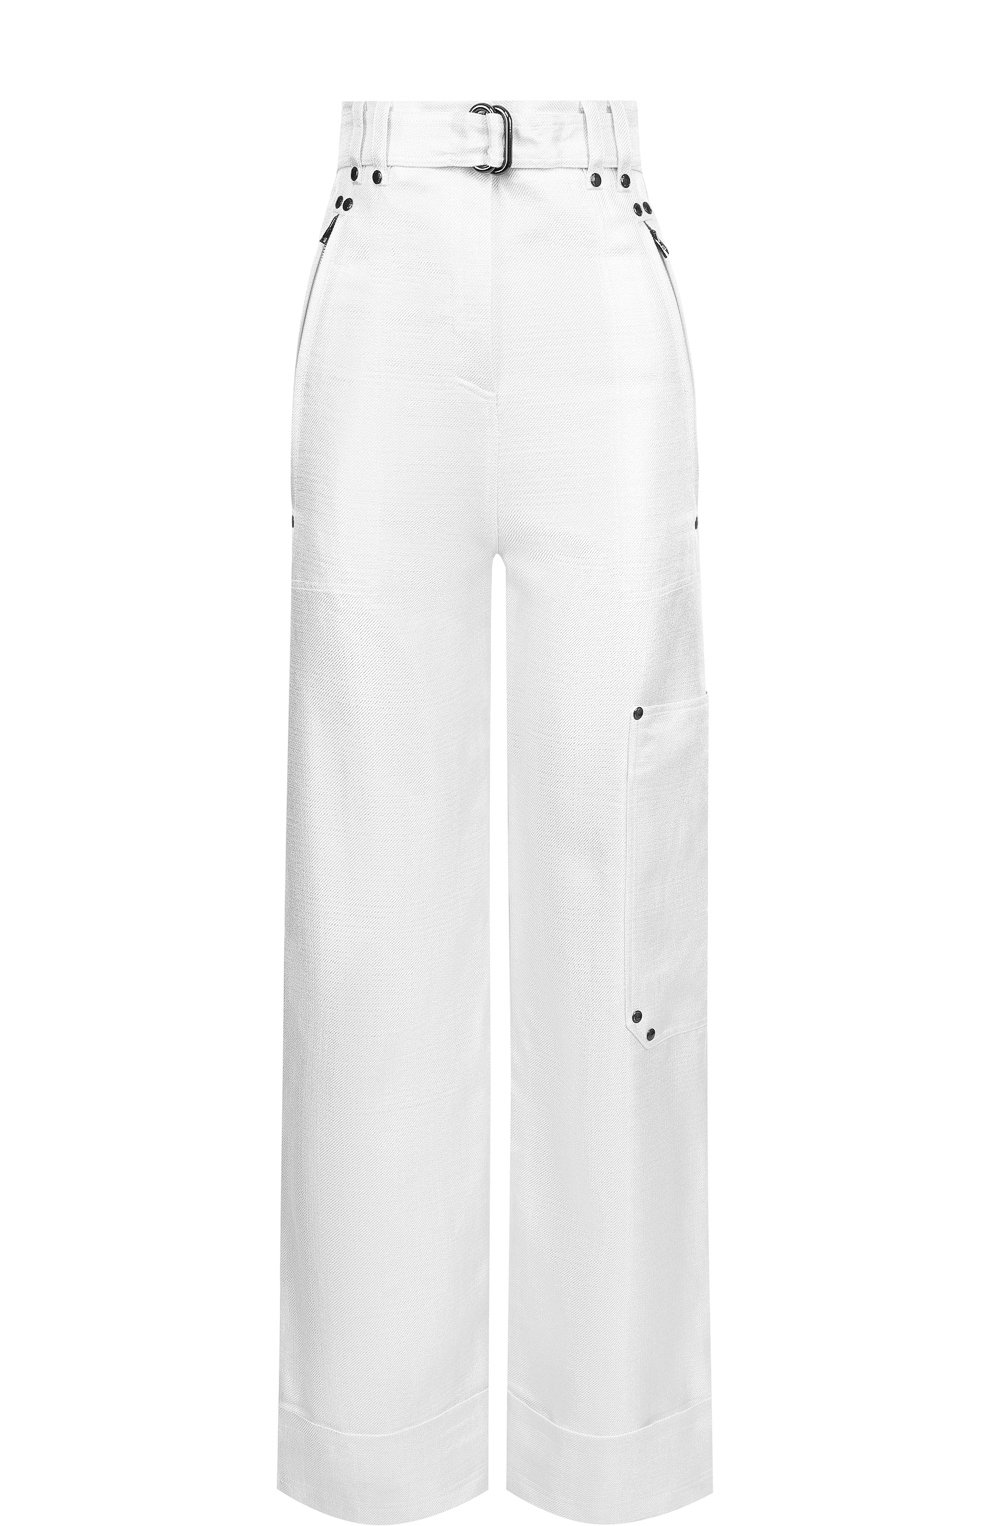 Женские классические брюки с высокой талией — купить в интернет-магазине Ламода